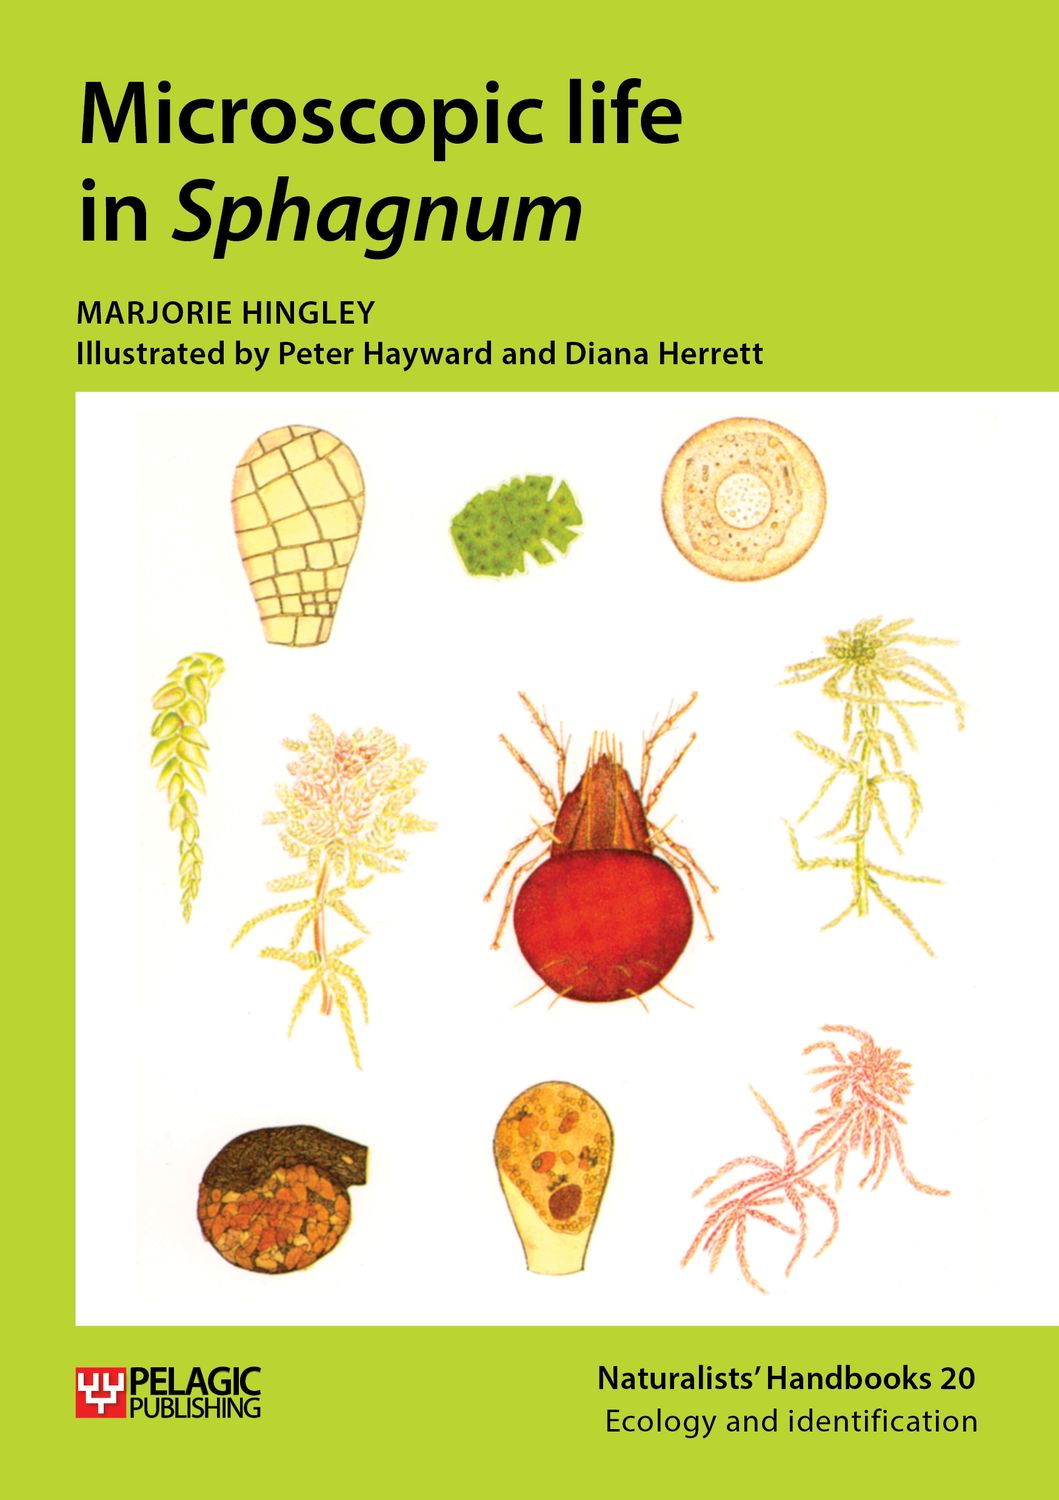 Microscopic life in Sphagnum - Pelagic Publishing